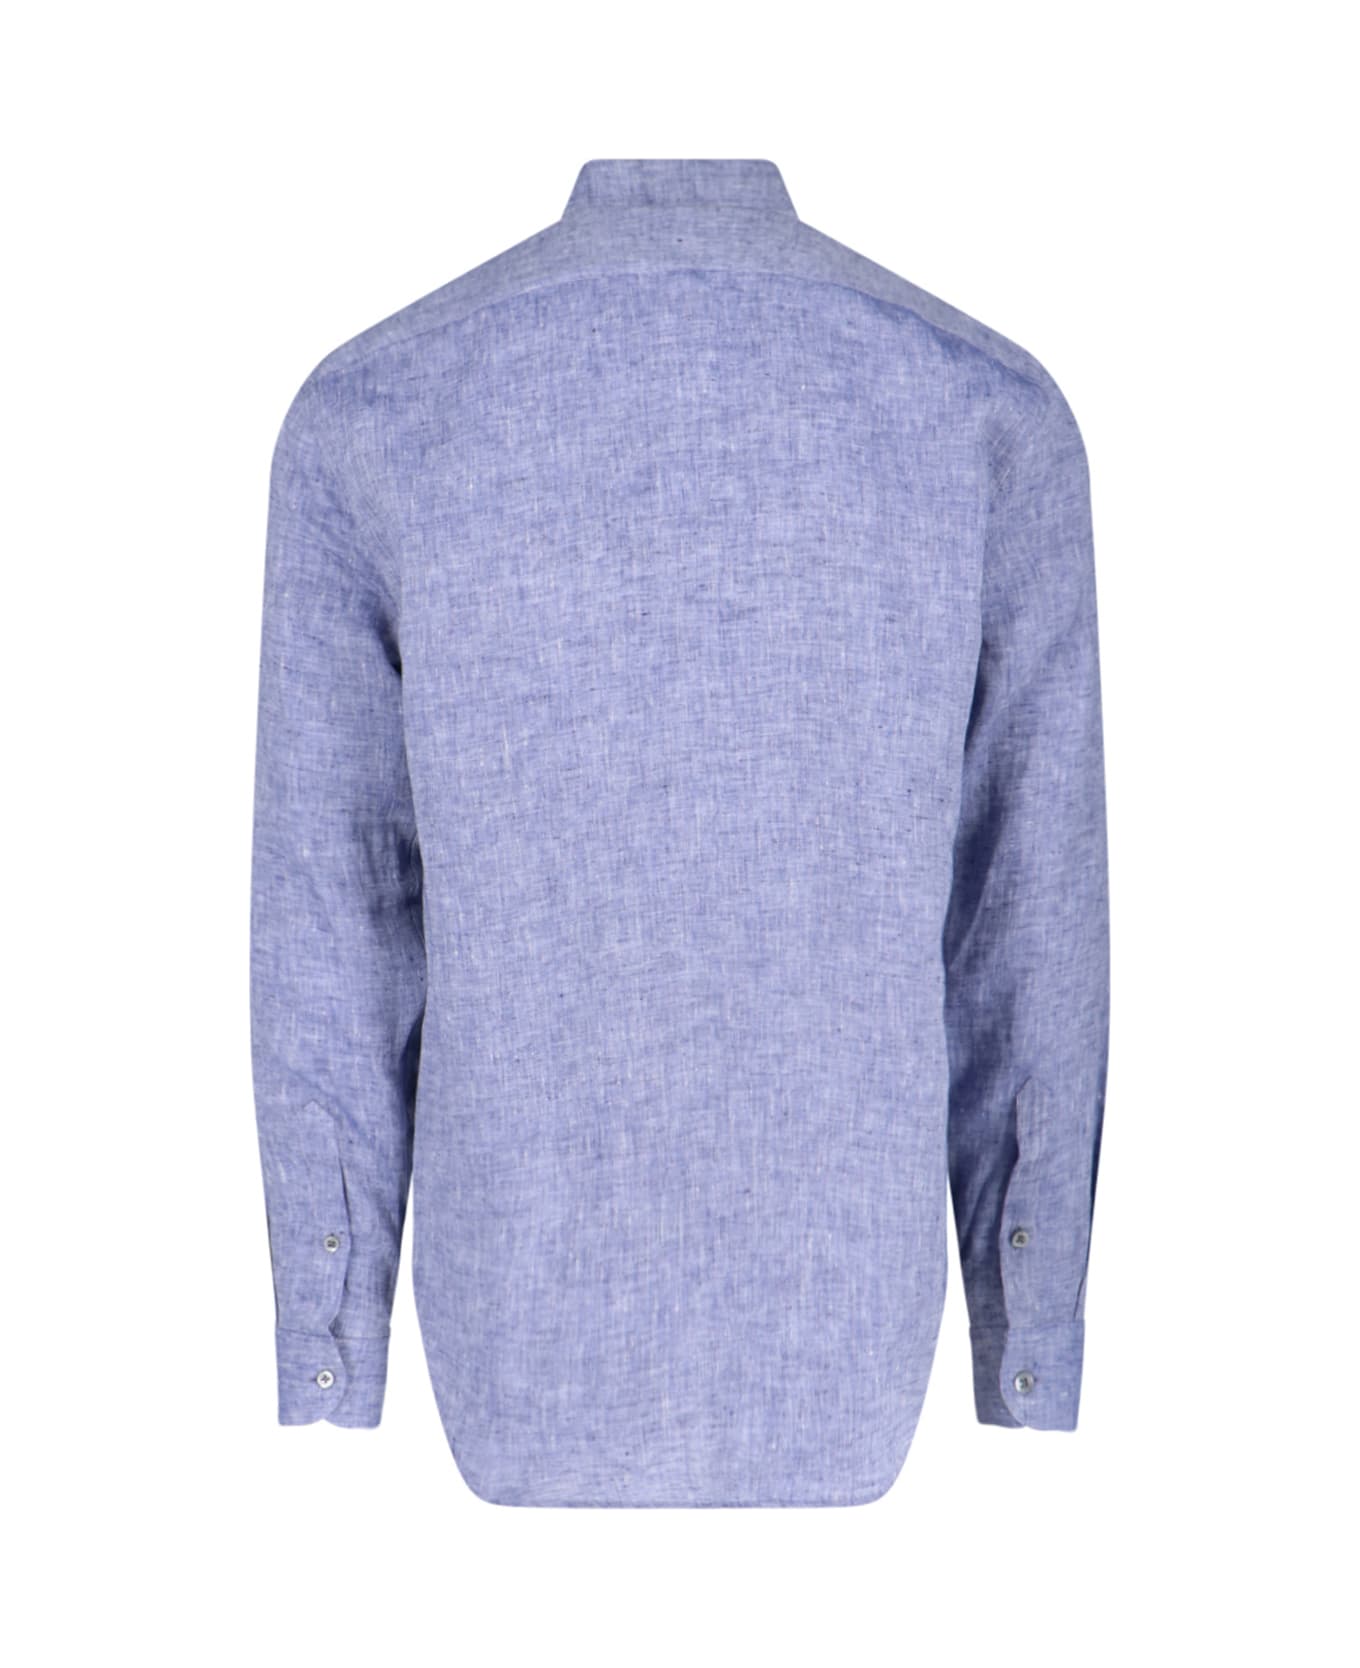 Emporio Armani Classic Shirt - Light Blue